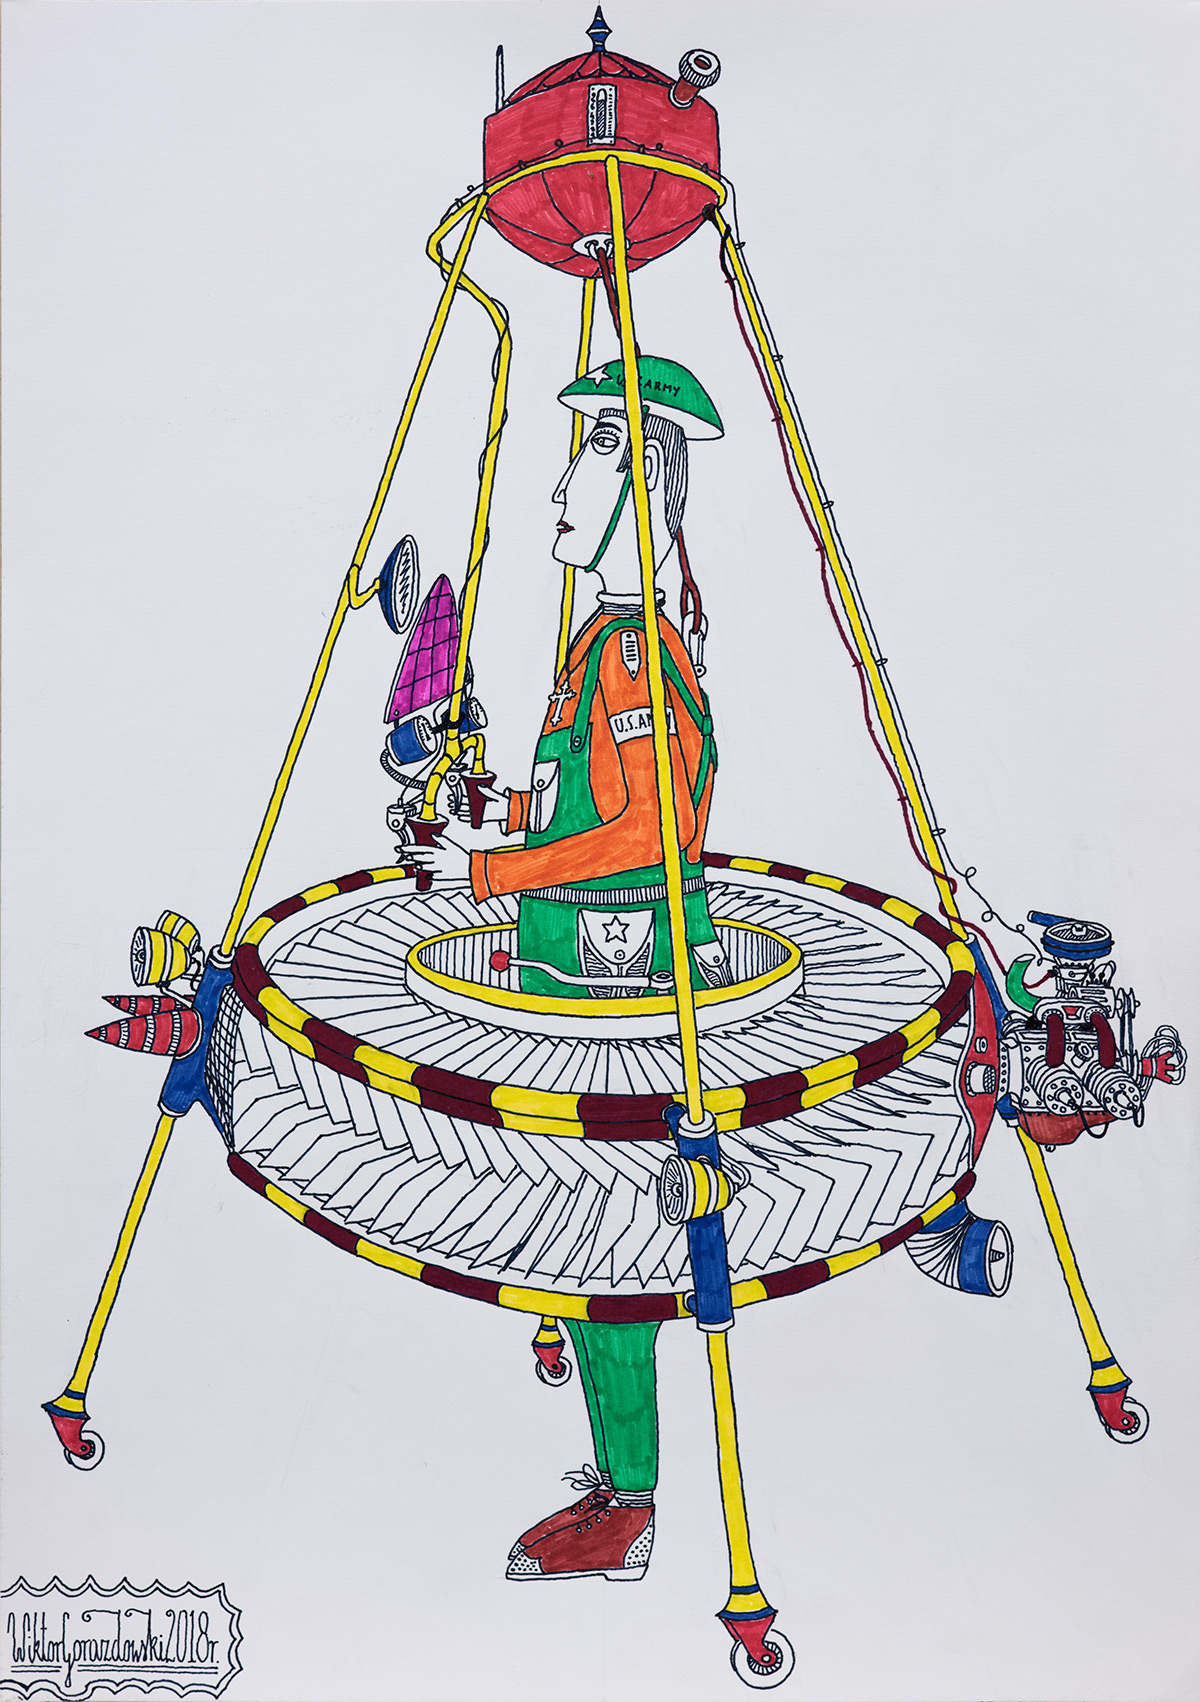 Wiktor Gorazdowski - Indywidualny zestaw latający Individual Flying Set (Fineliner and marker on paper | Size: 30 x 42 cm | Price: 900 PLN)